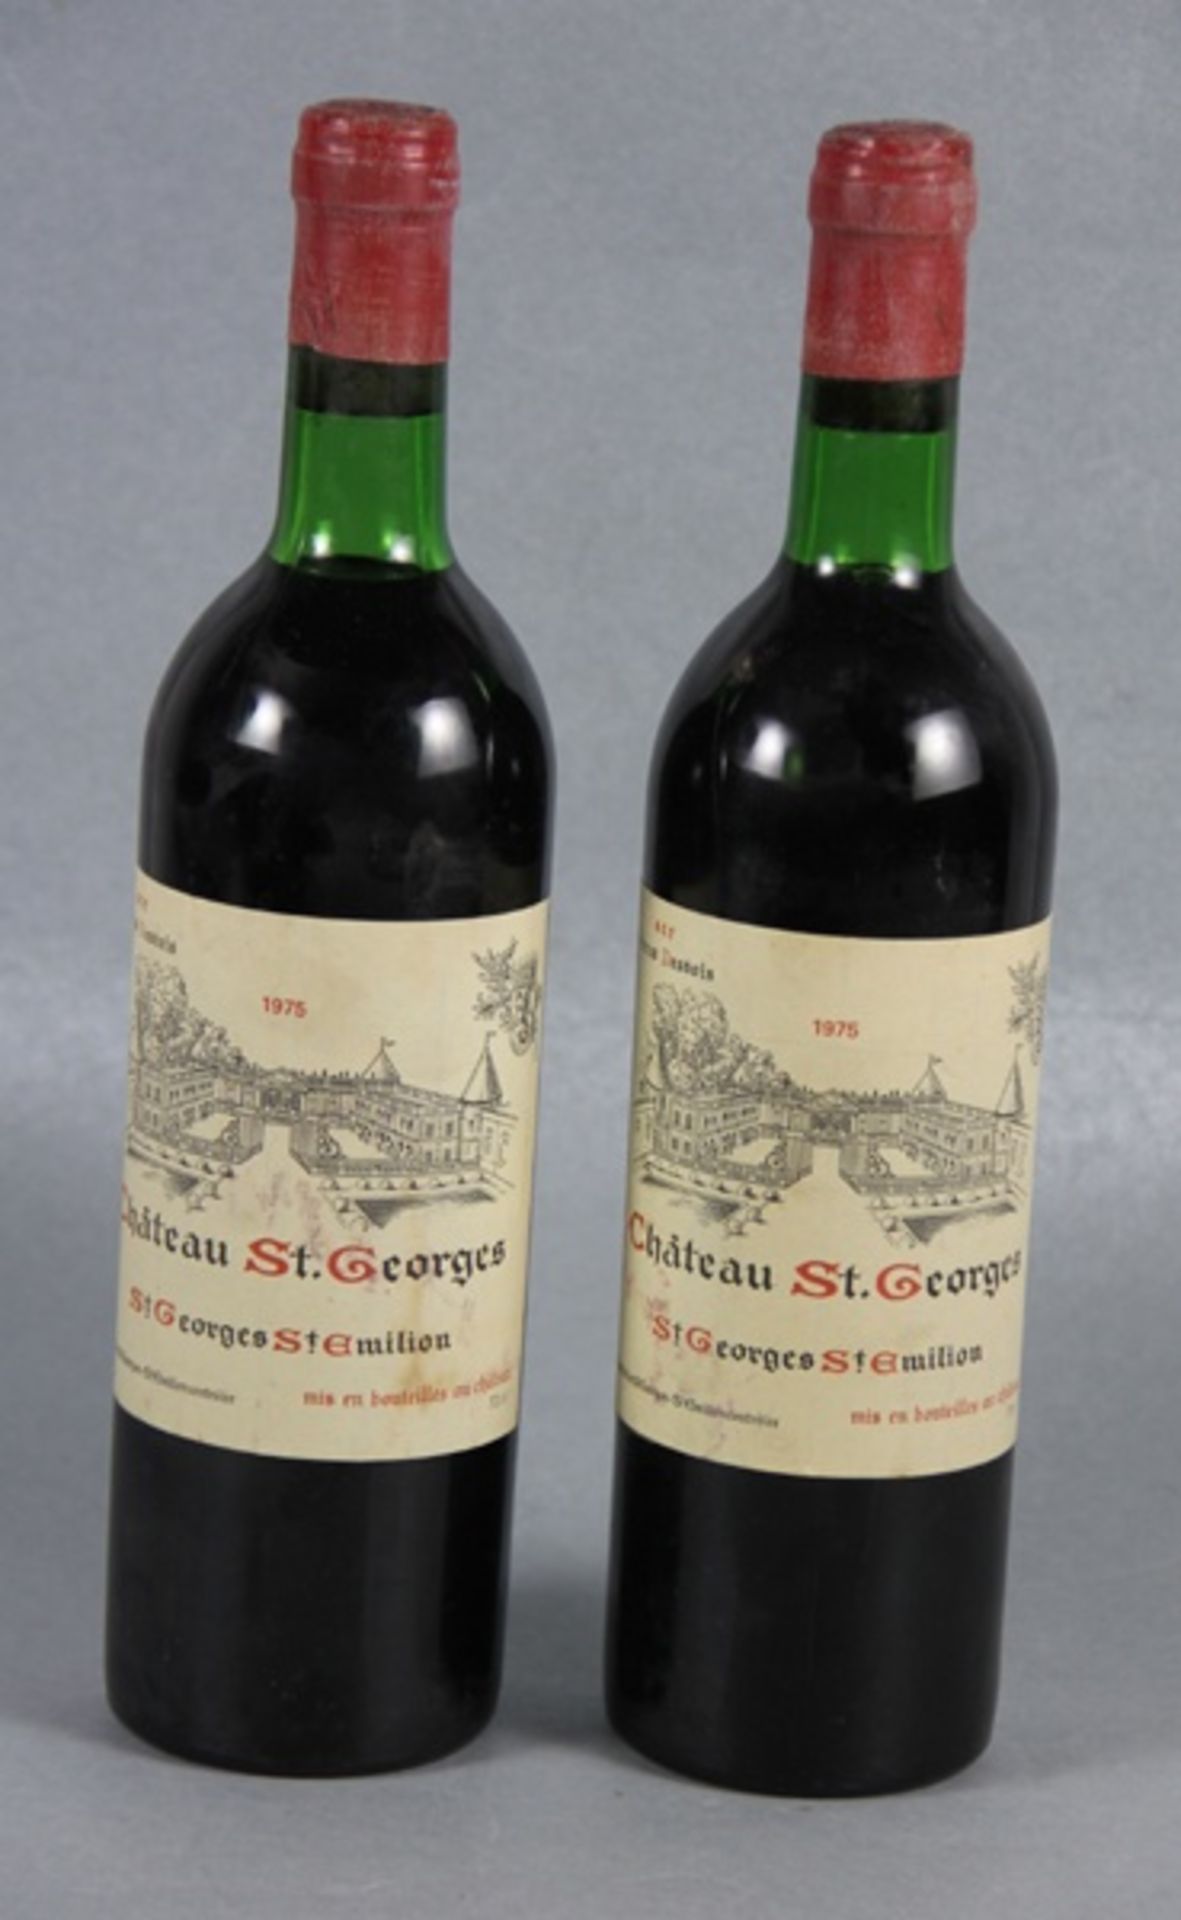 Konvolut Rotwein Chateau St. Georges1975, 2 Flaschen Rotwein, Chateau St. Georges, sce. Petrus